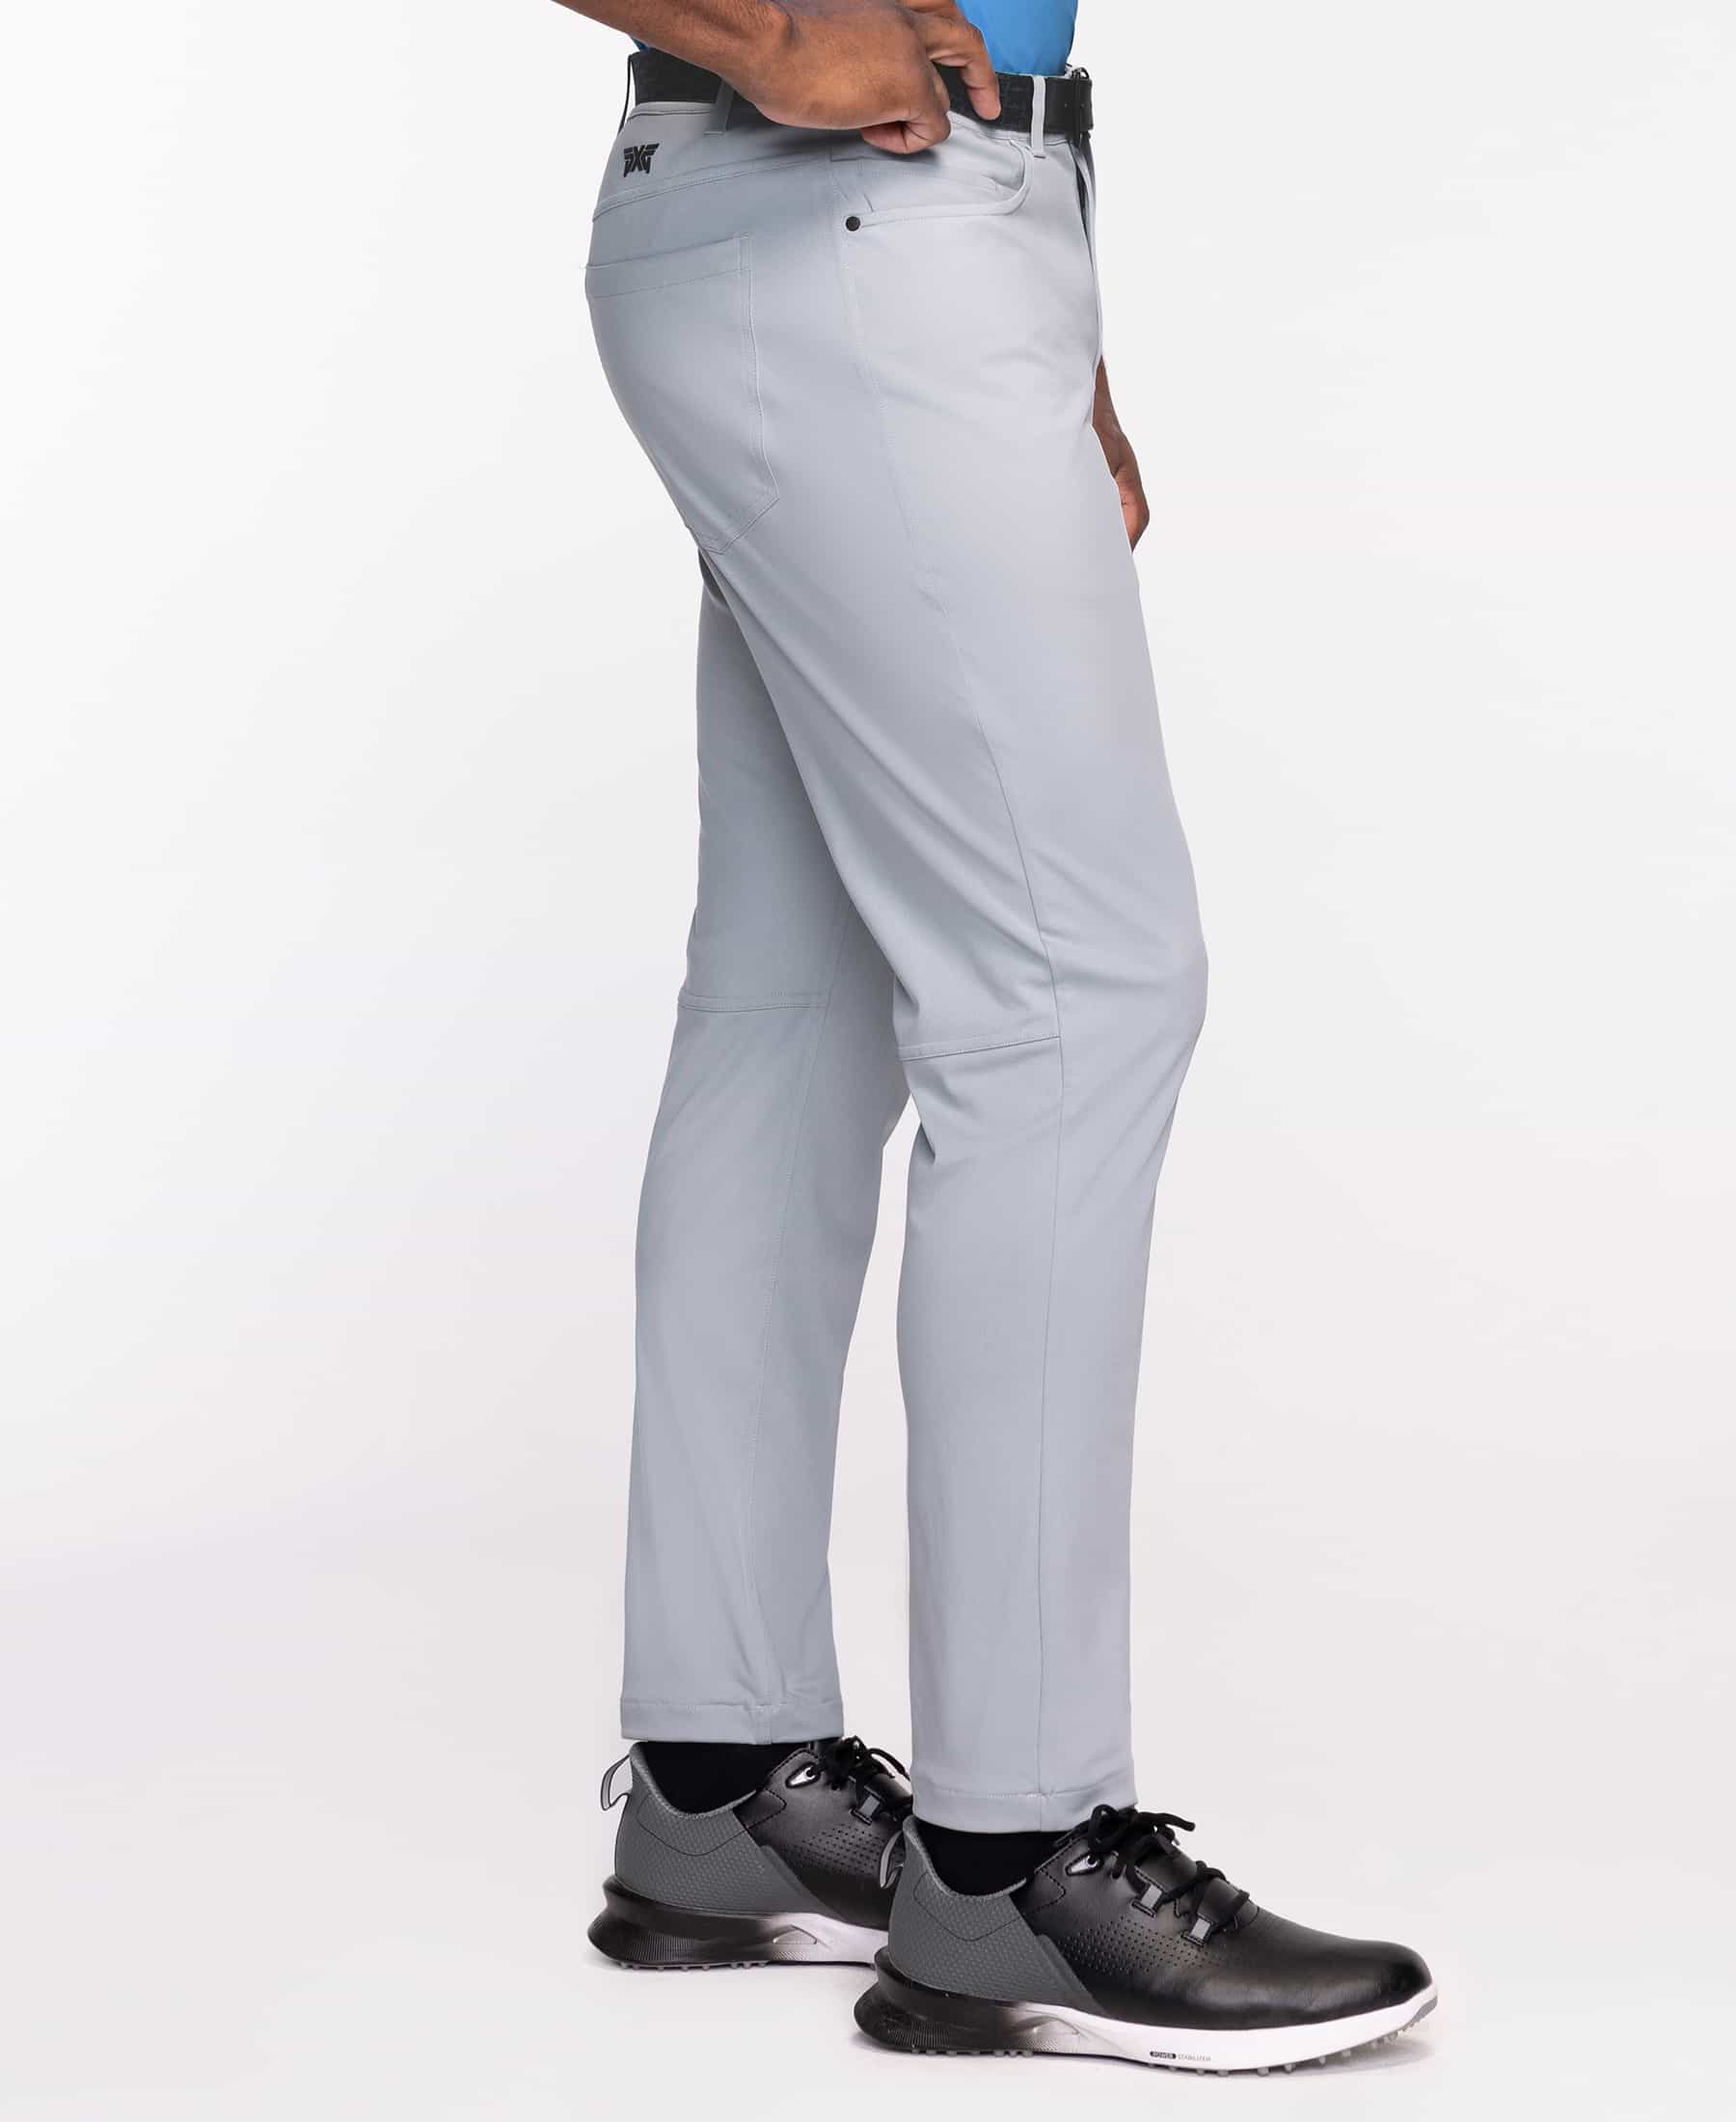 Buy Men's Slim Trouser Pants